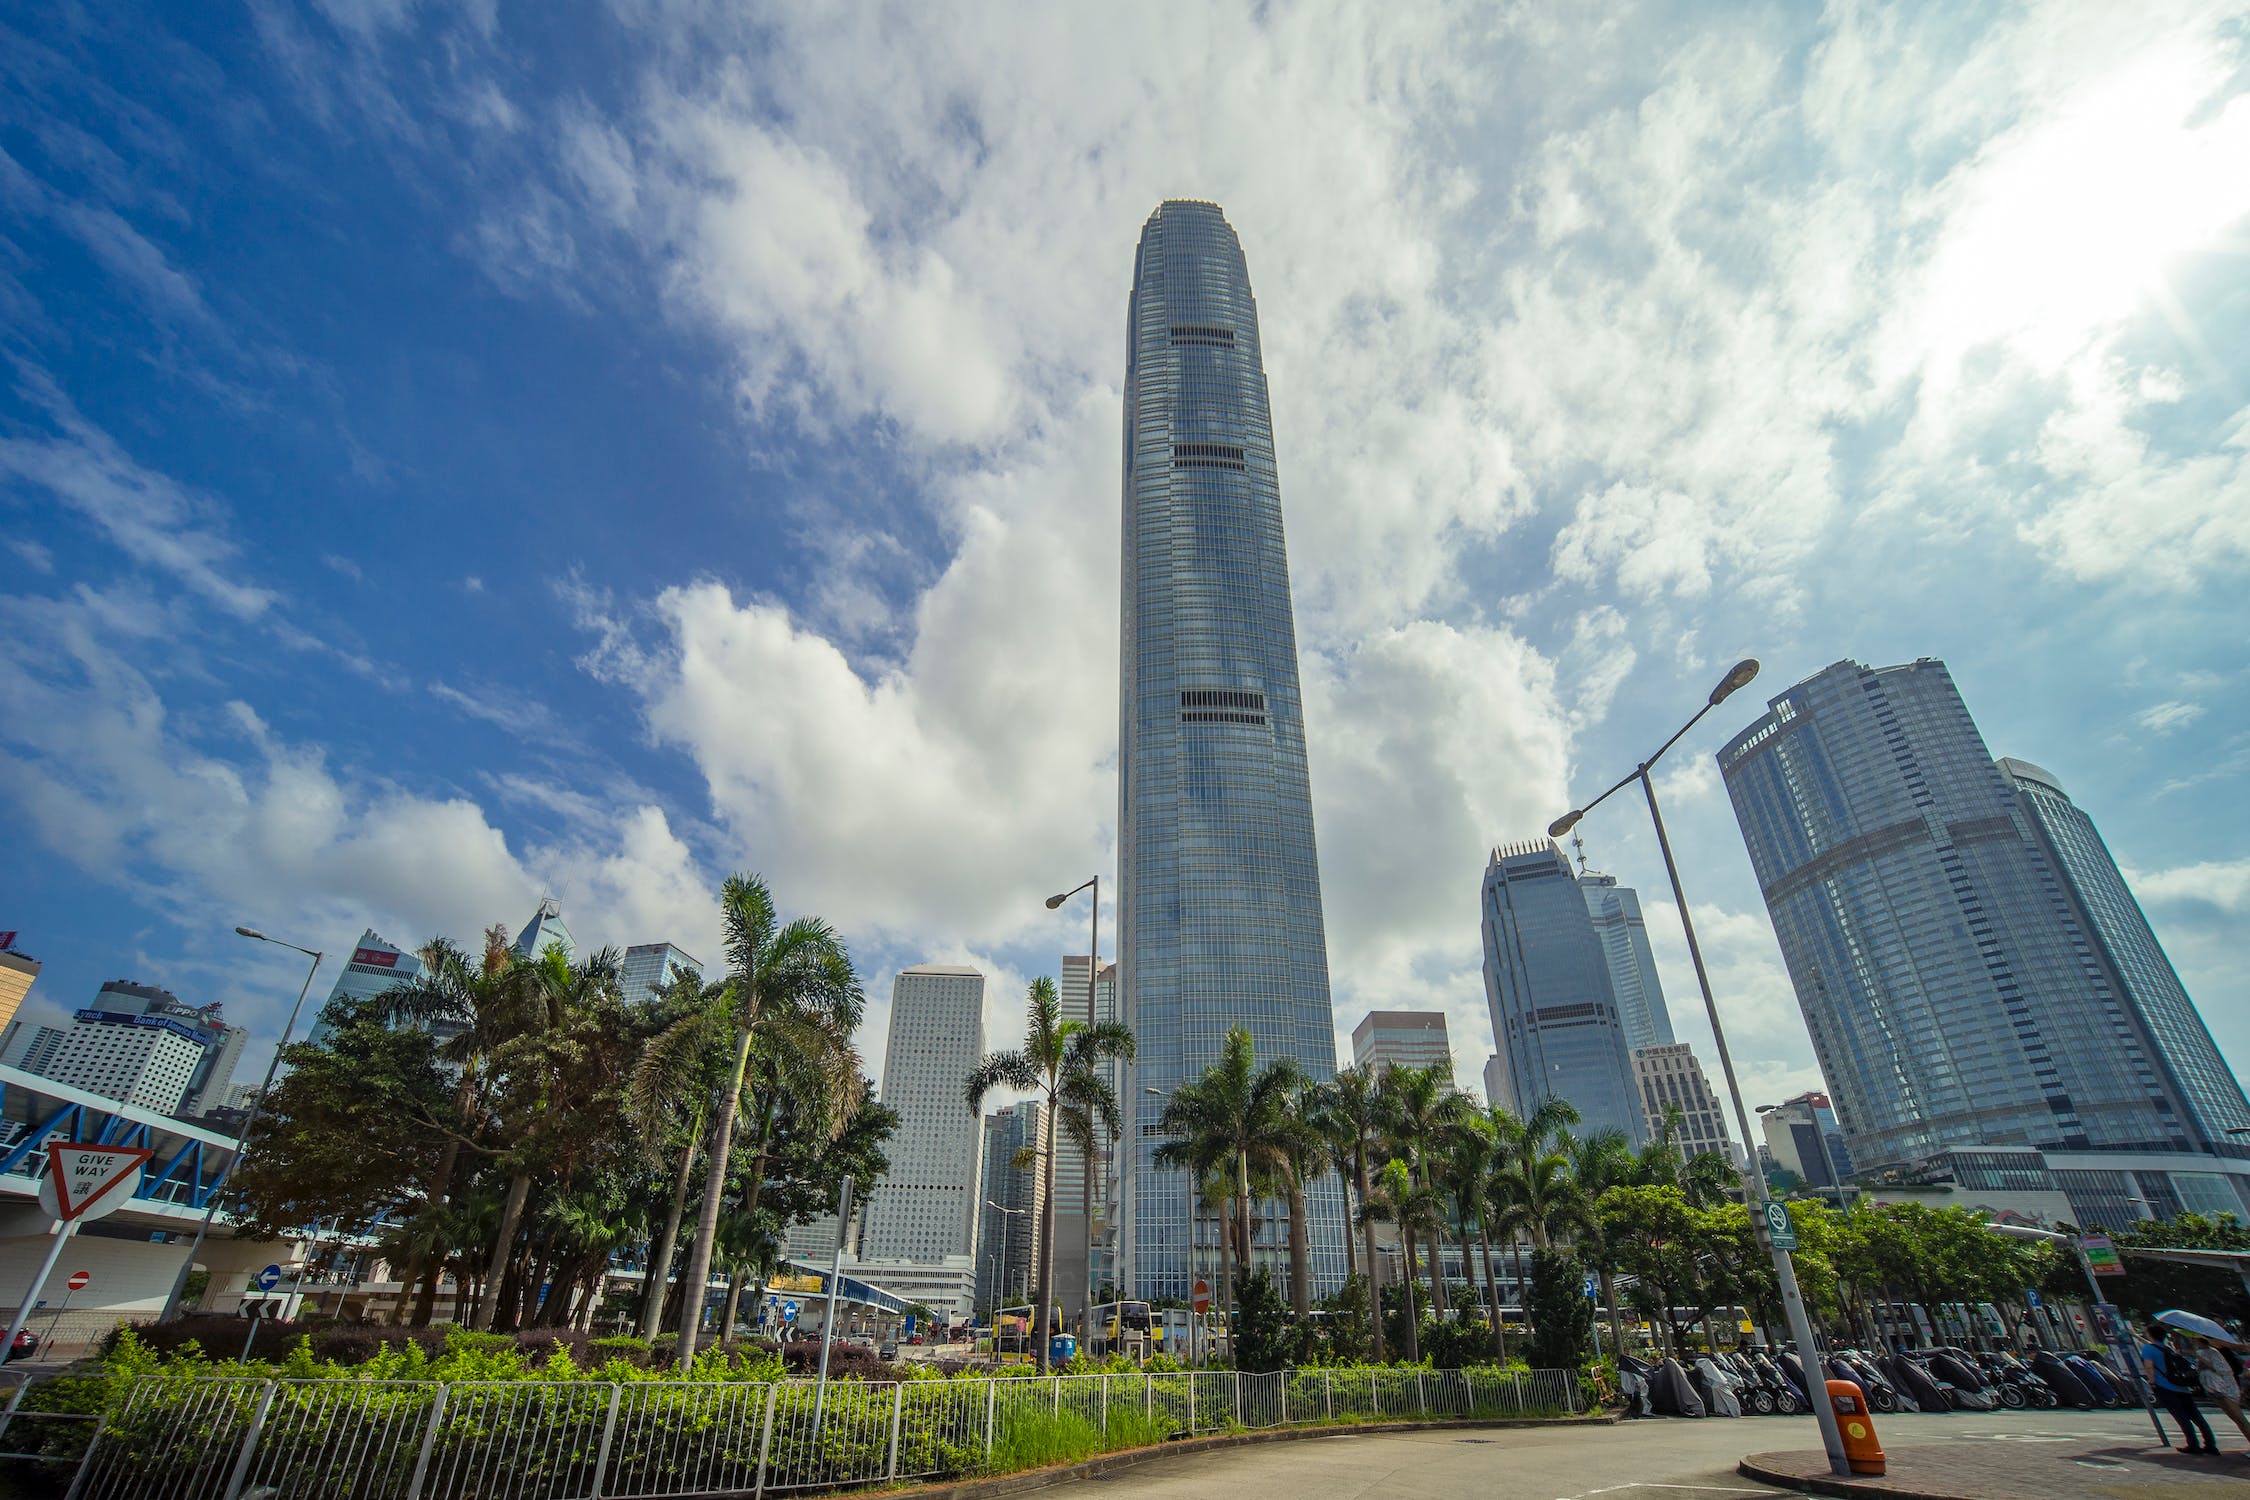 为商旅复苏做准备 香港持续提升基础设施
